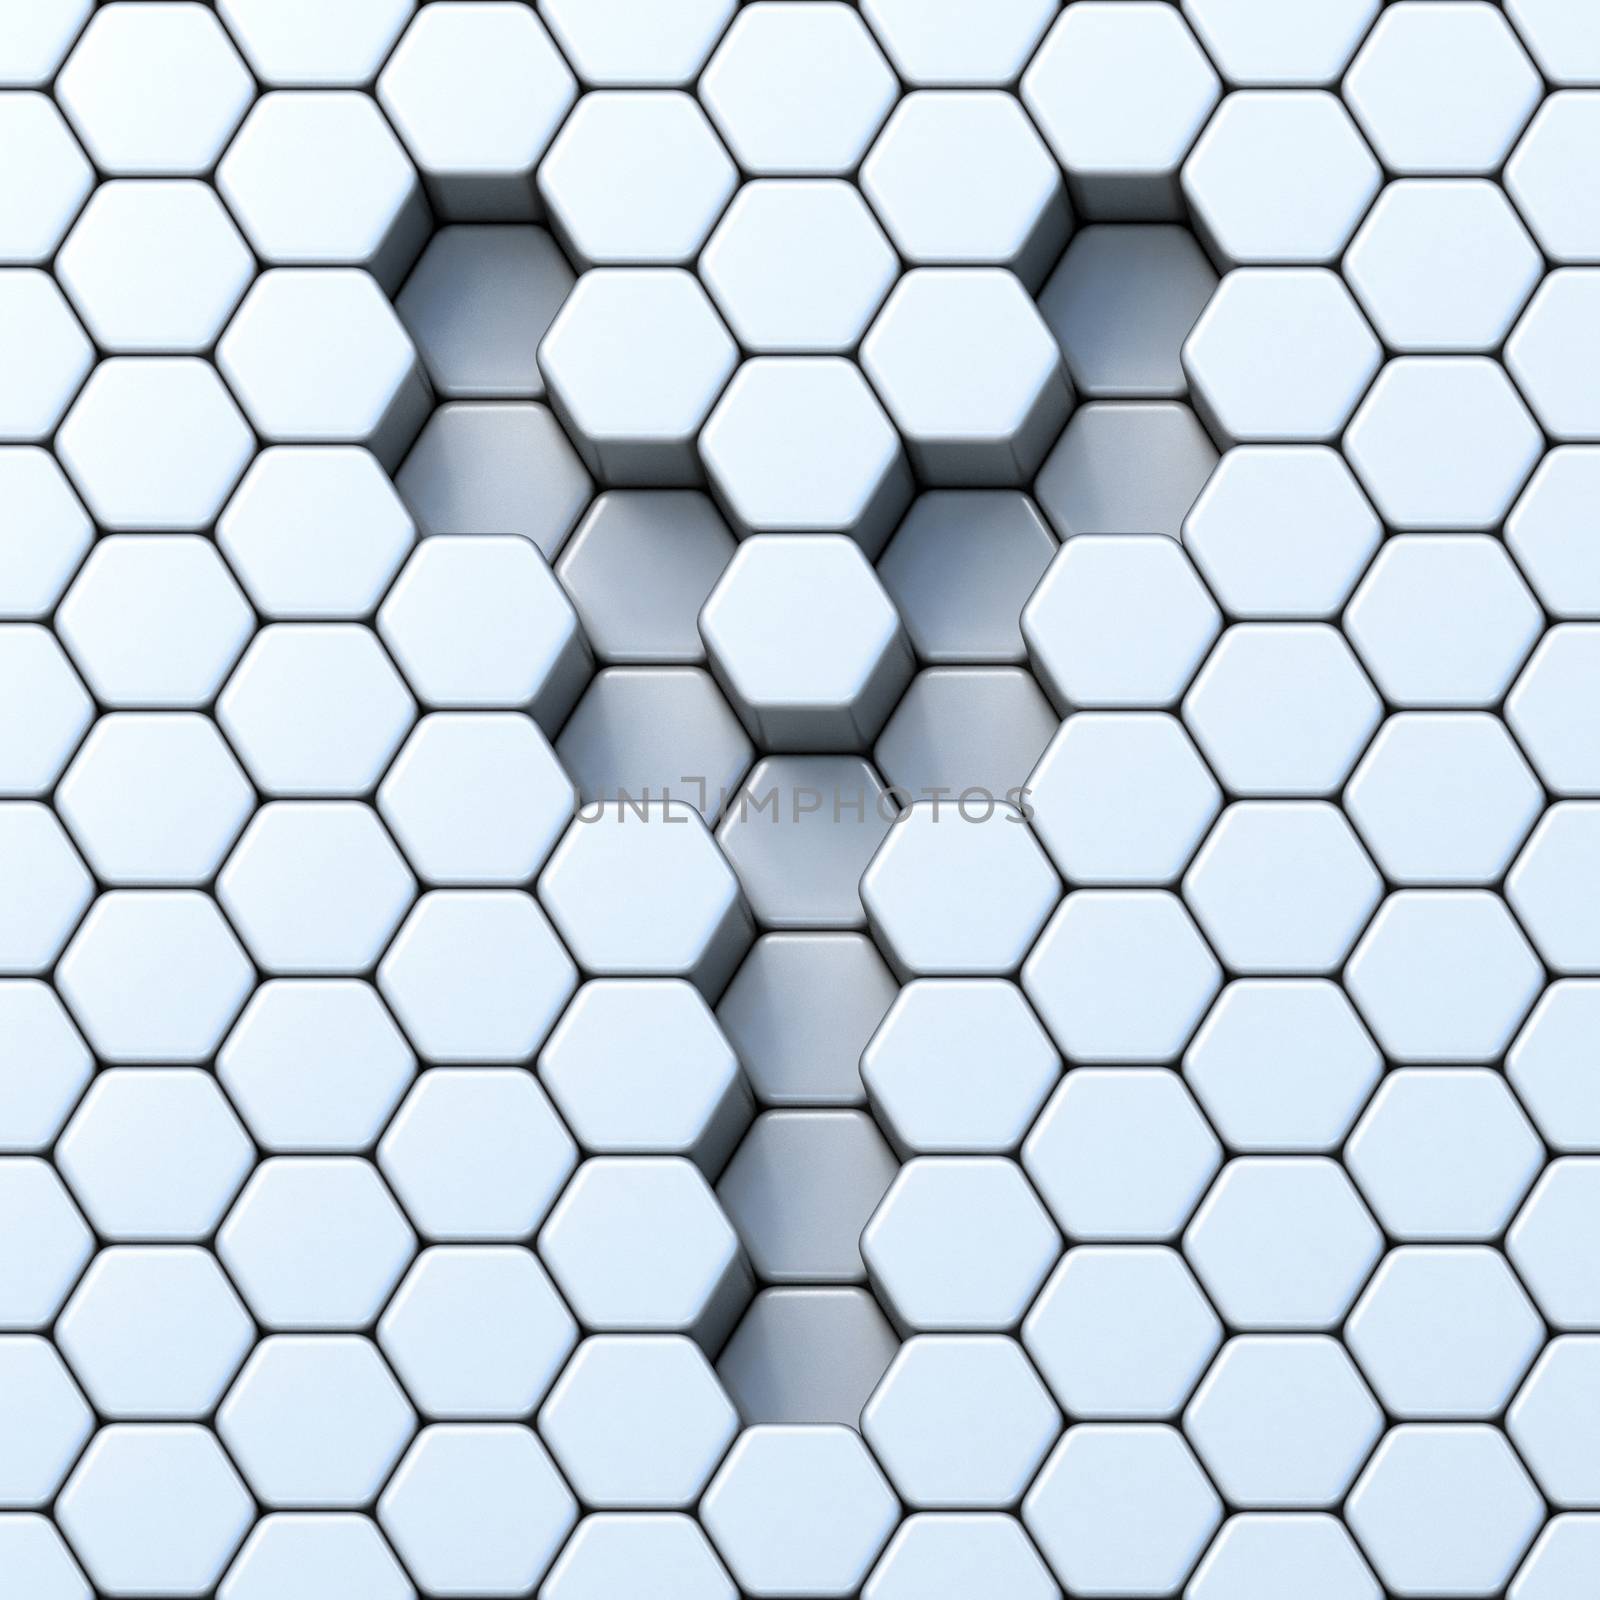 Hexagonal grid letter Y 3D render illustration